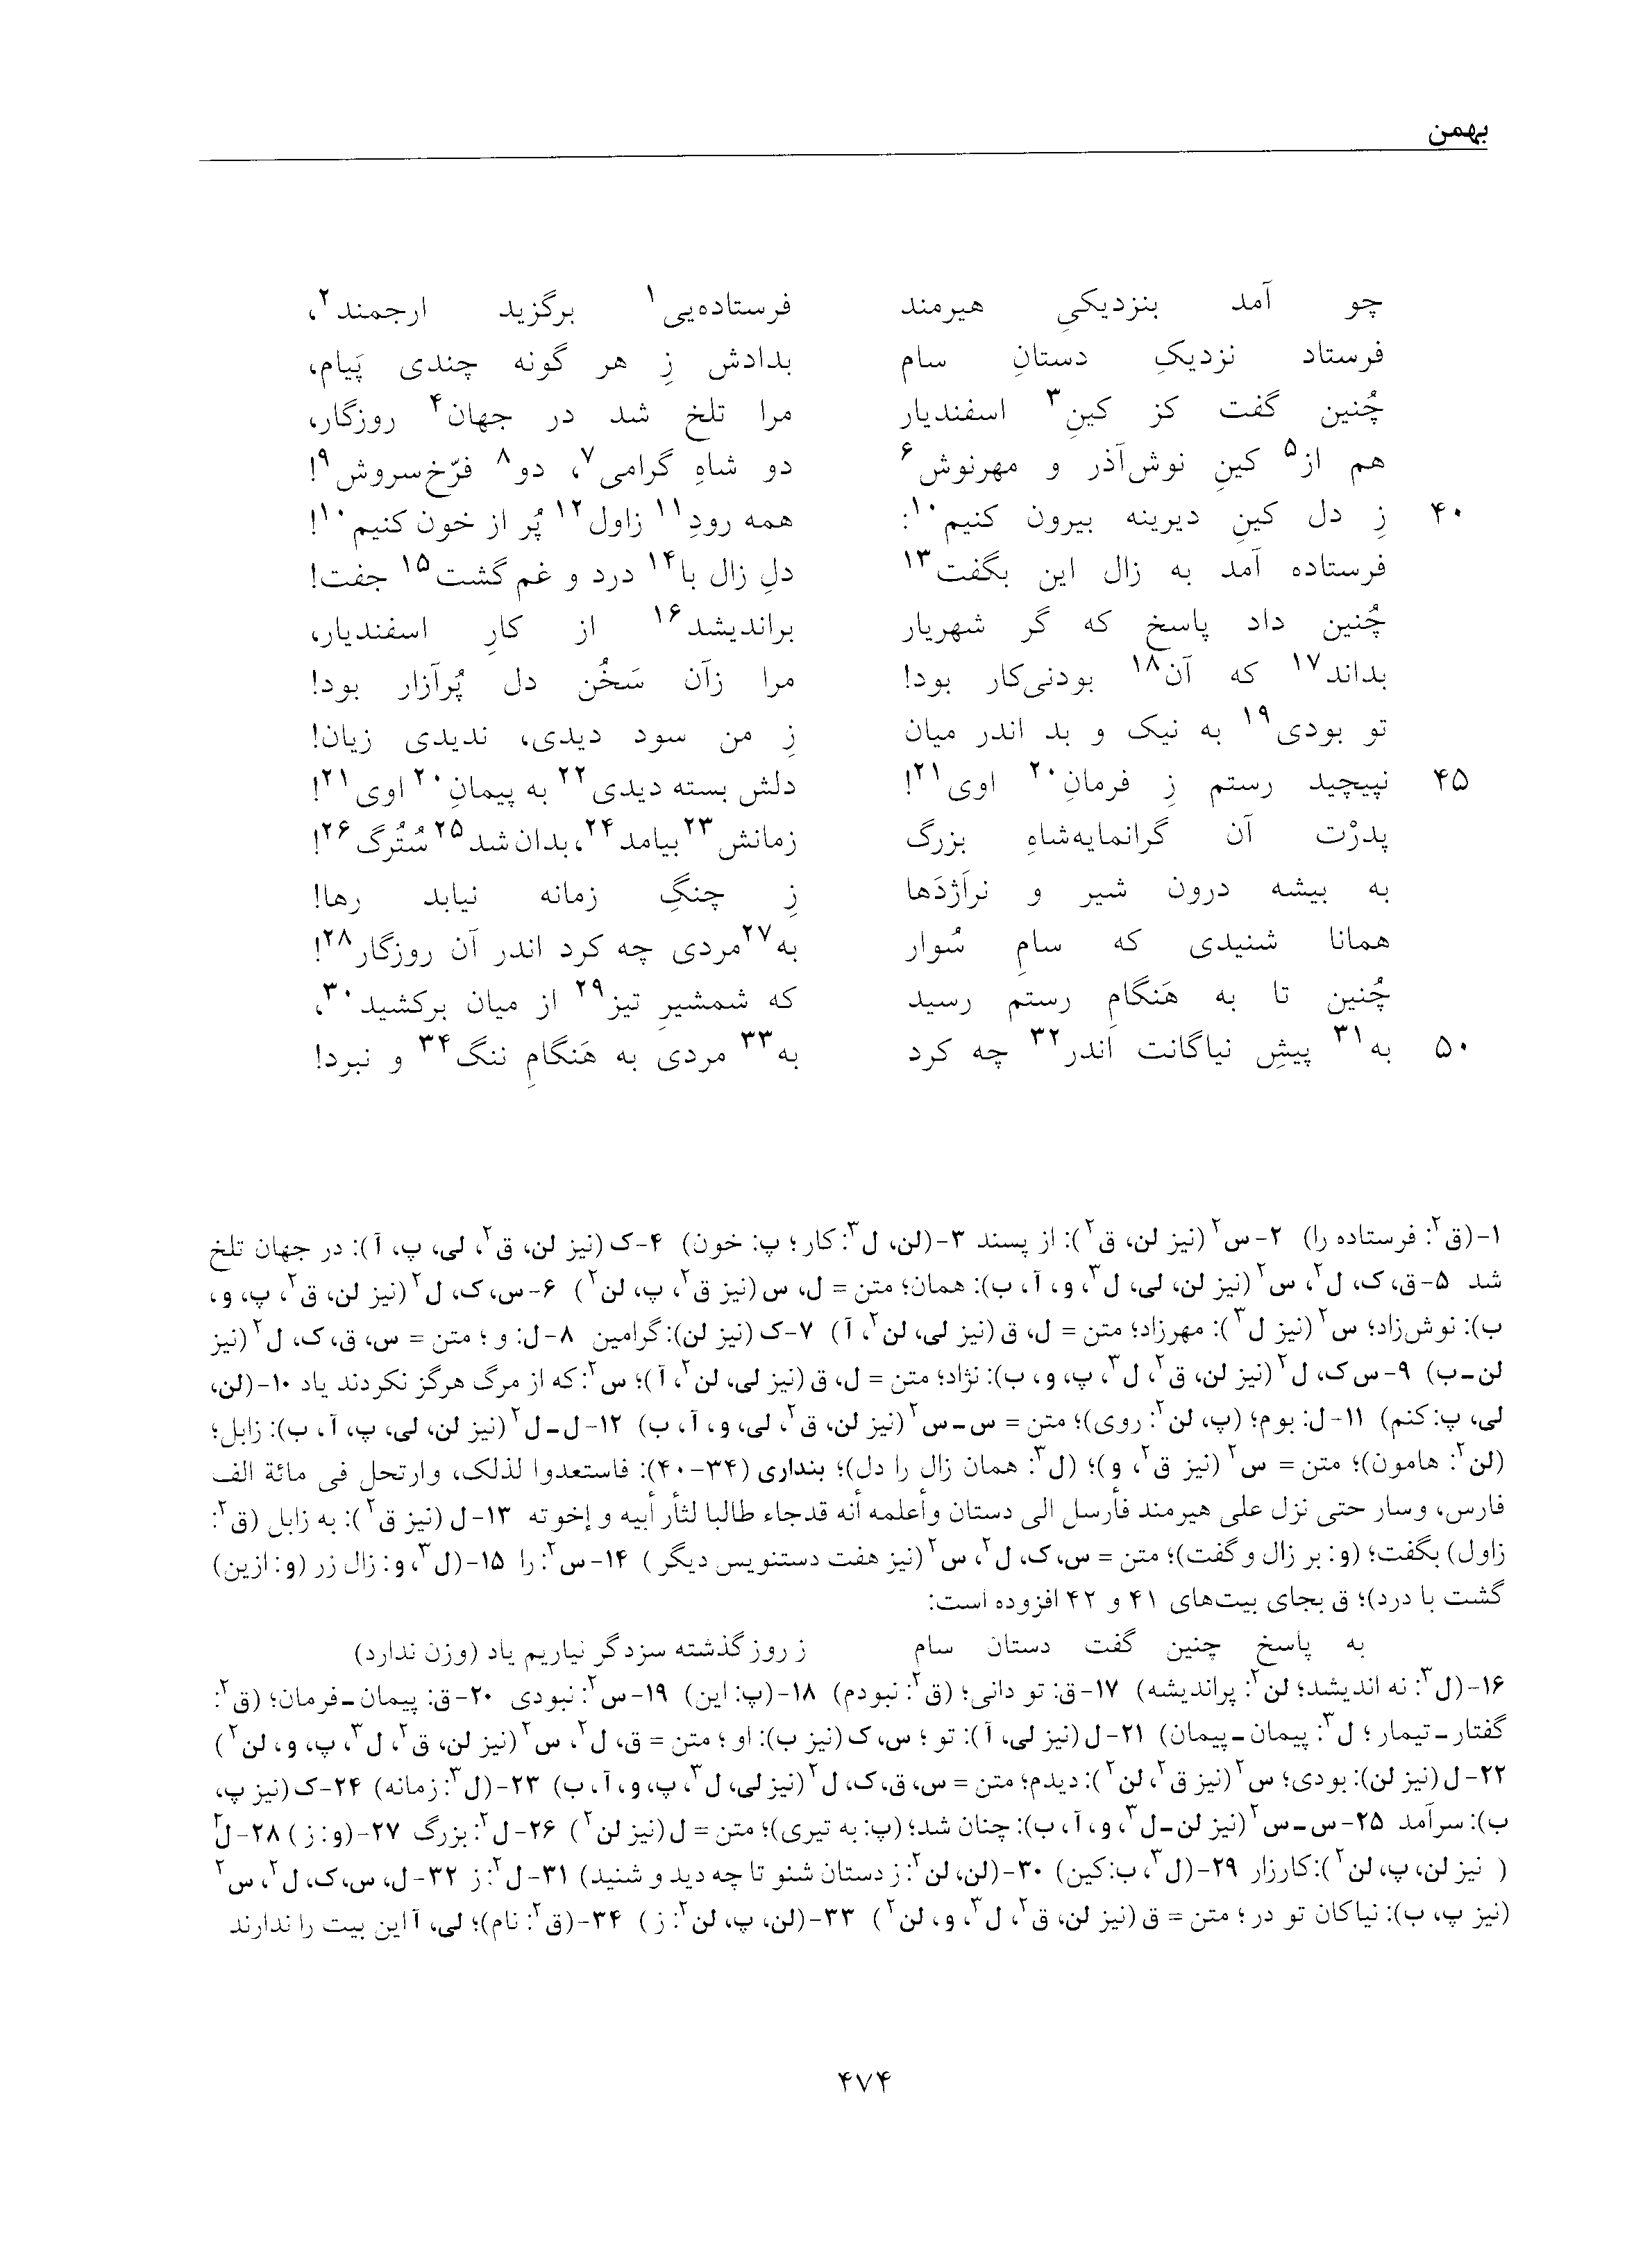 vol. 5, p. 474